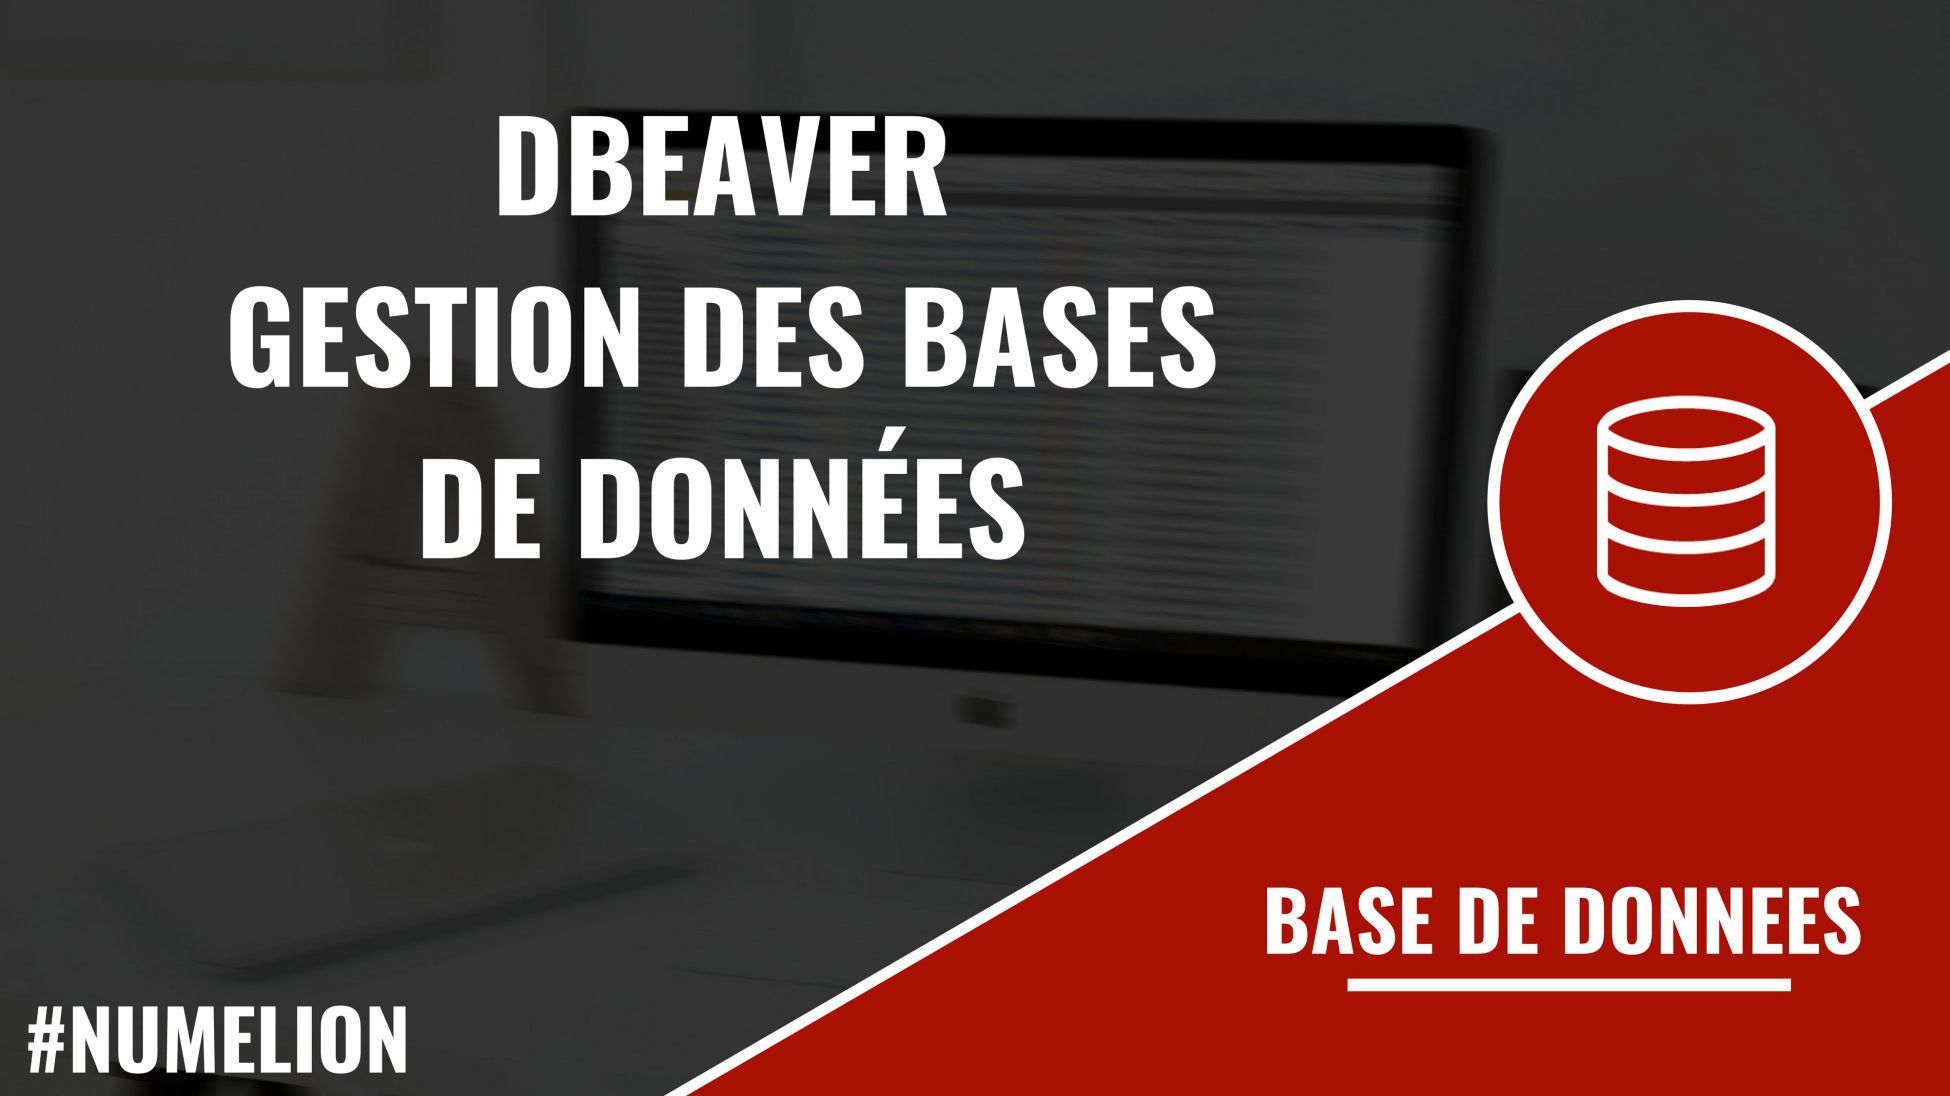 DBeaver - Gestion de bases de données